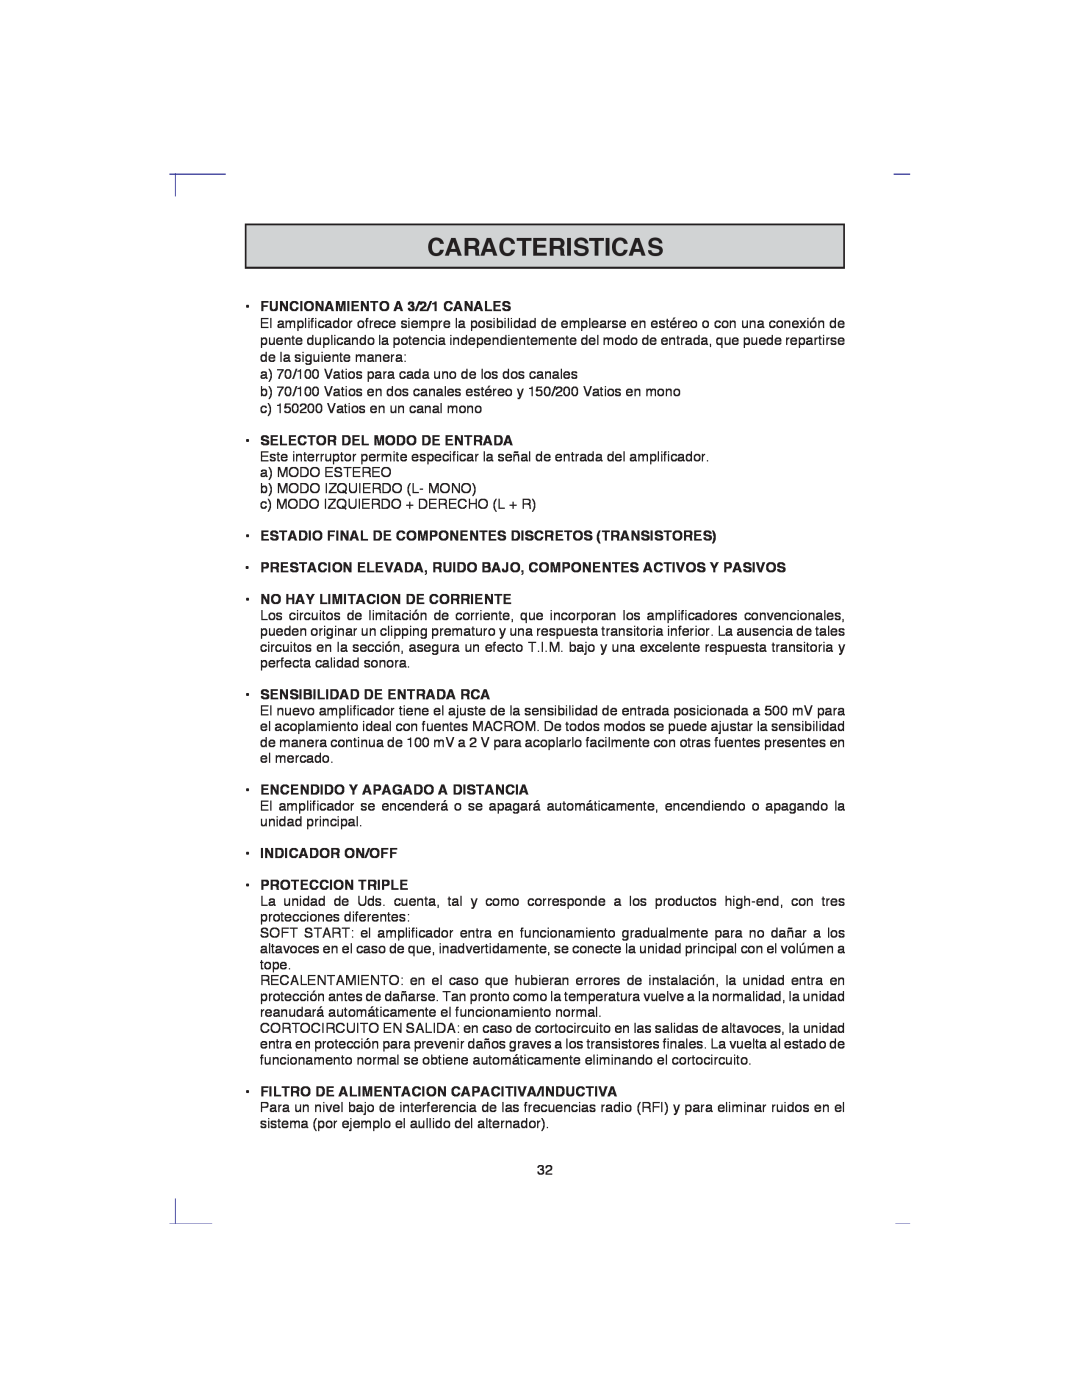 Macrom 42.24 Caracteristicas, FUNCIONAMIENTO A 3/2/1 CANALES, Selector Del Modo De Entrada, No Hay Limitacion De Corriente 